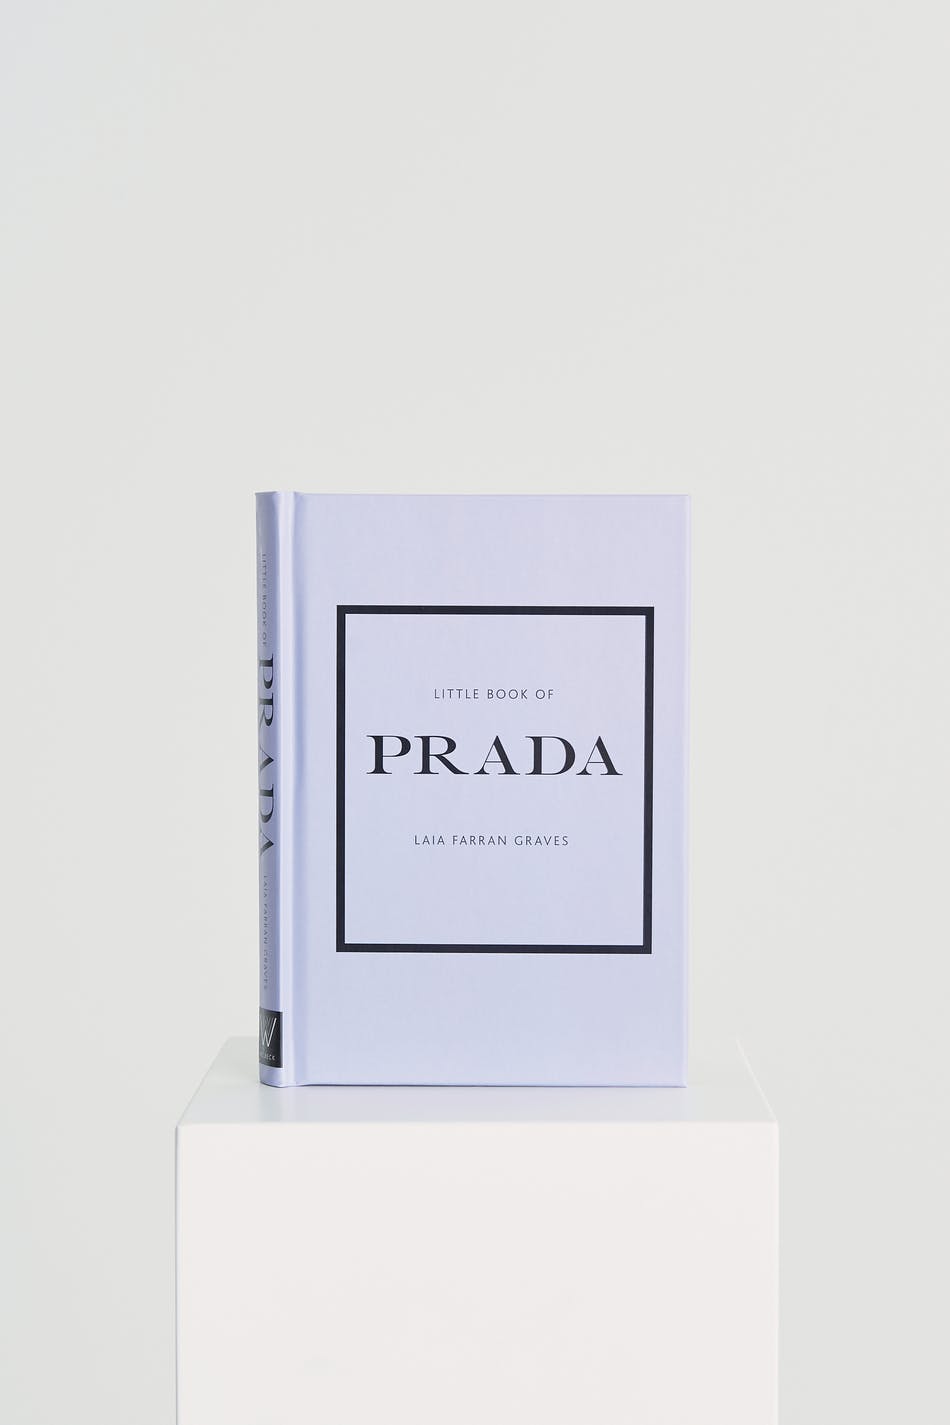 Little Book of Prada [Book]